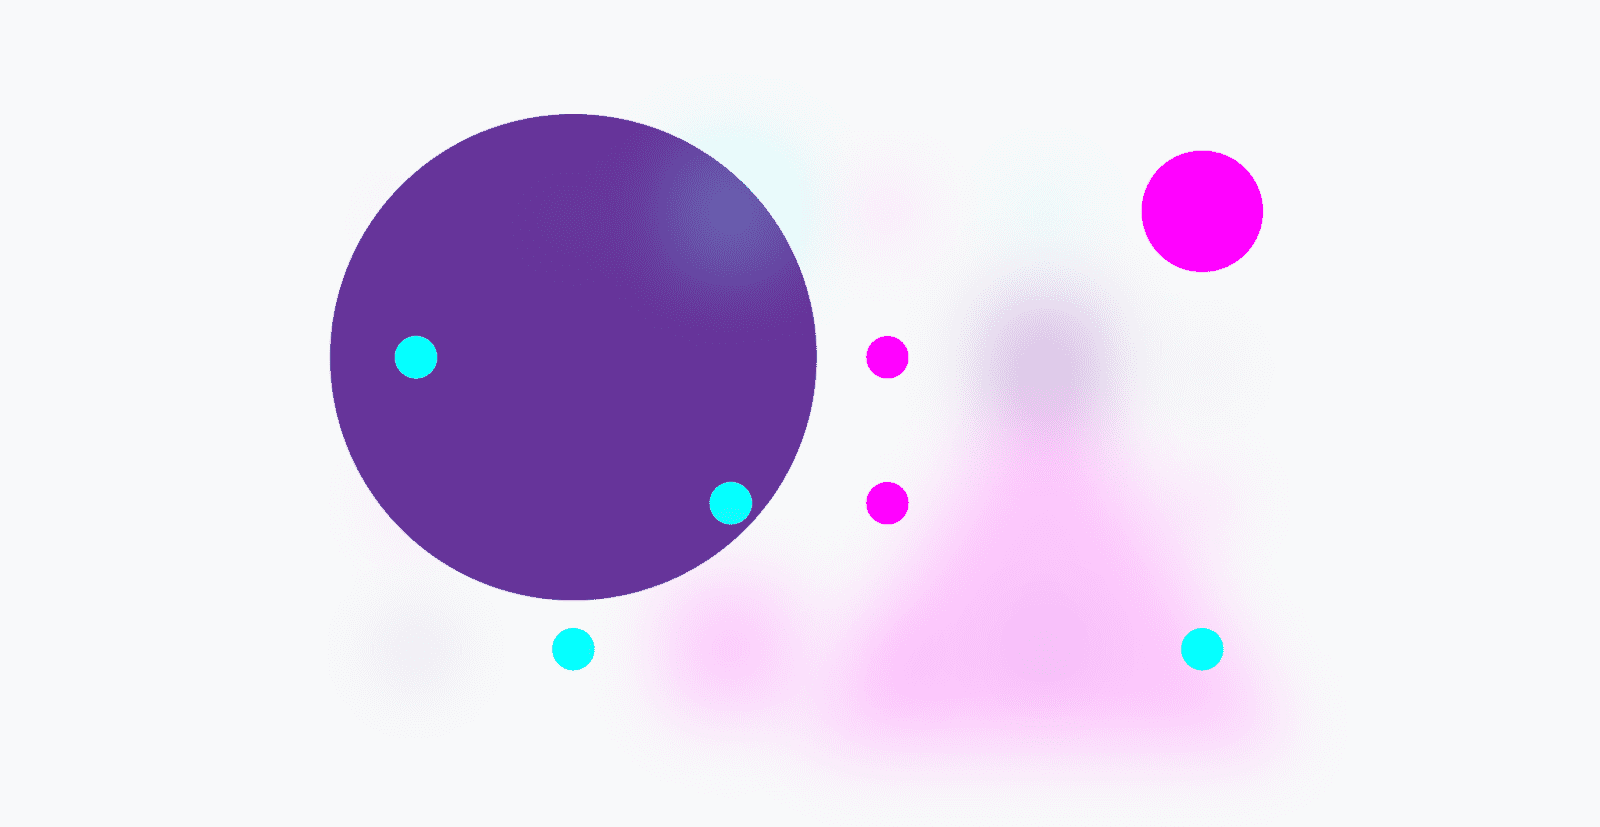 شبکه رنگارنگ اشکال تنها با دایره ها باقی مانده است، همه اشکال دیگر تقریباً نامرئی هستند.